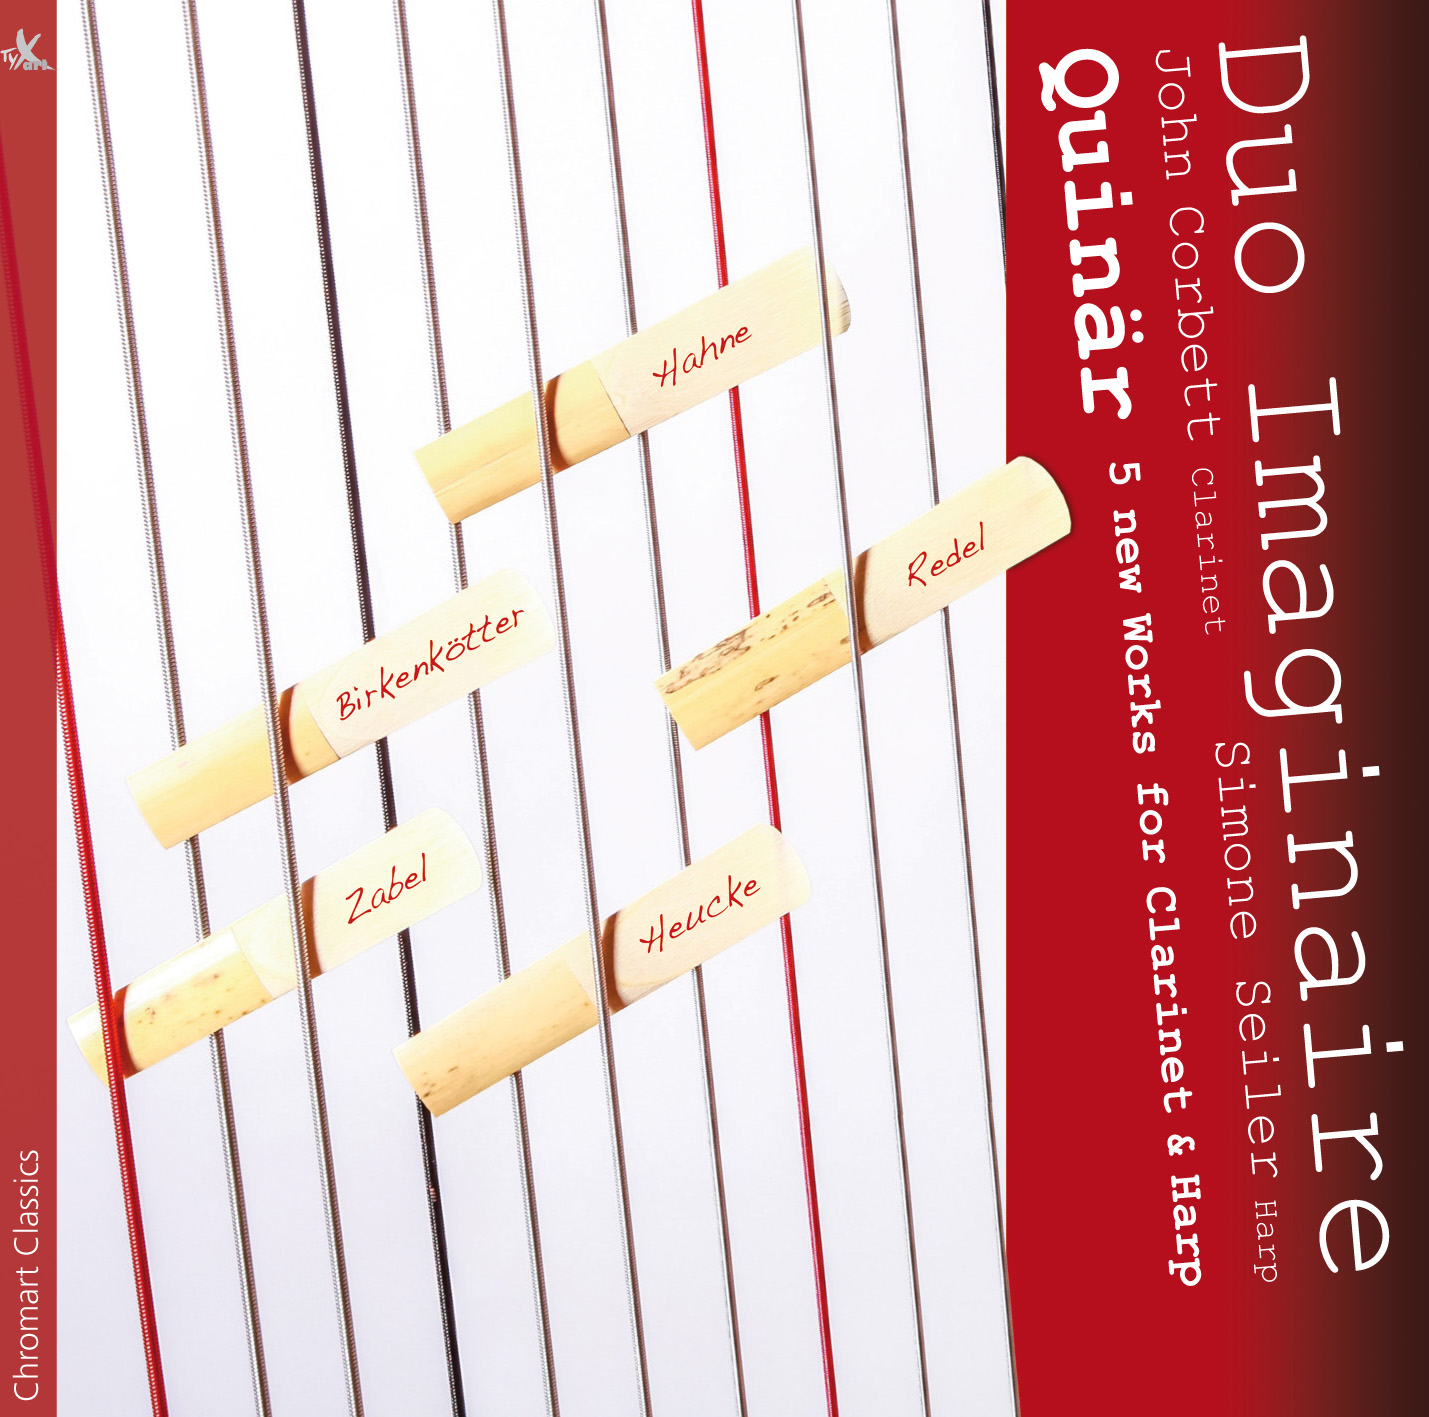 Quinär - 5 neue Werke für Klarinette & Harfe - Duo Imaginaire